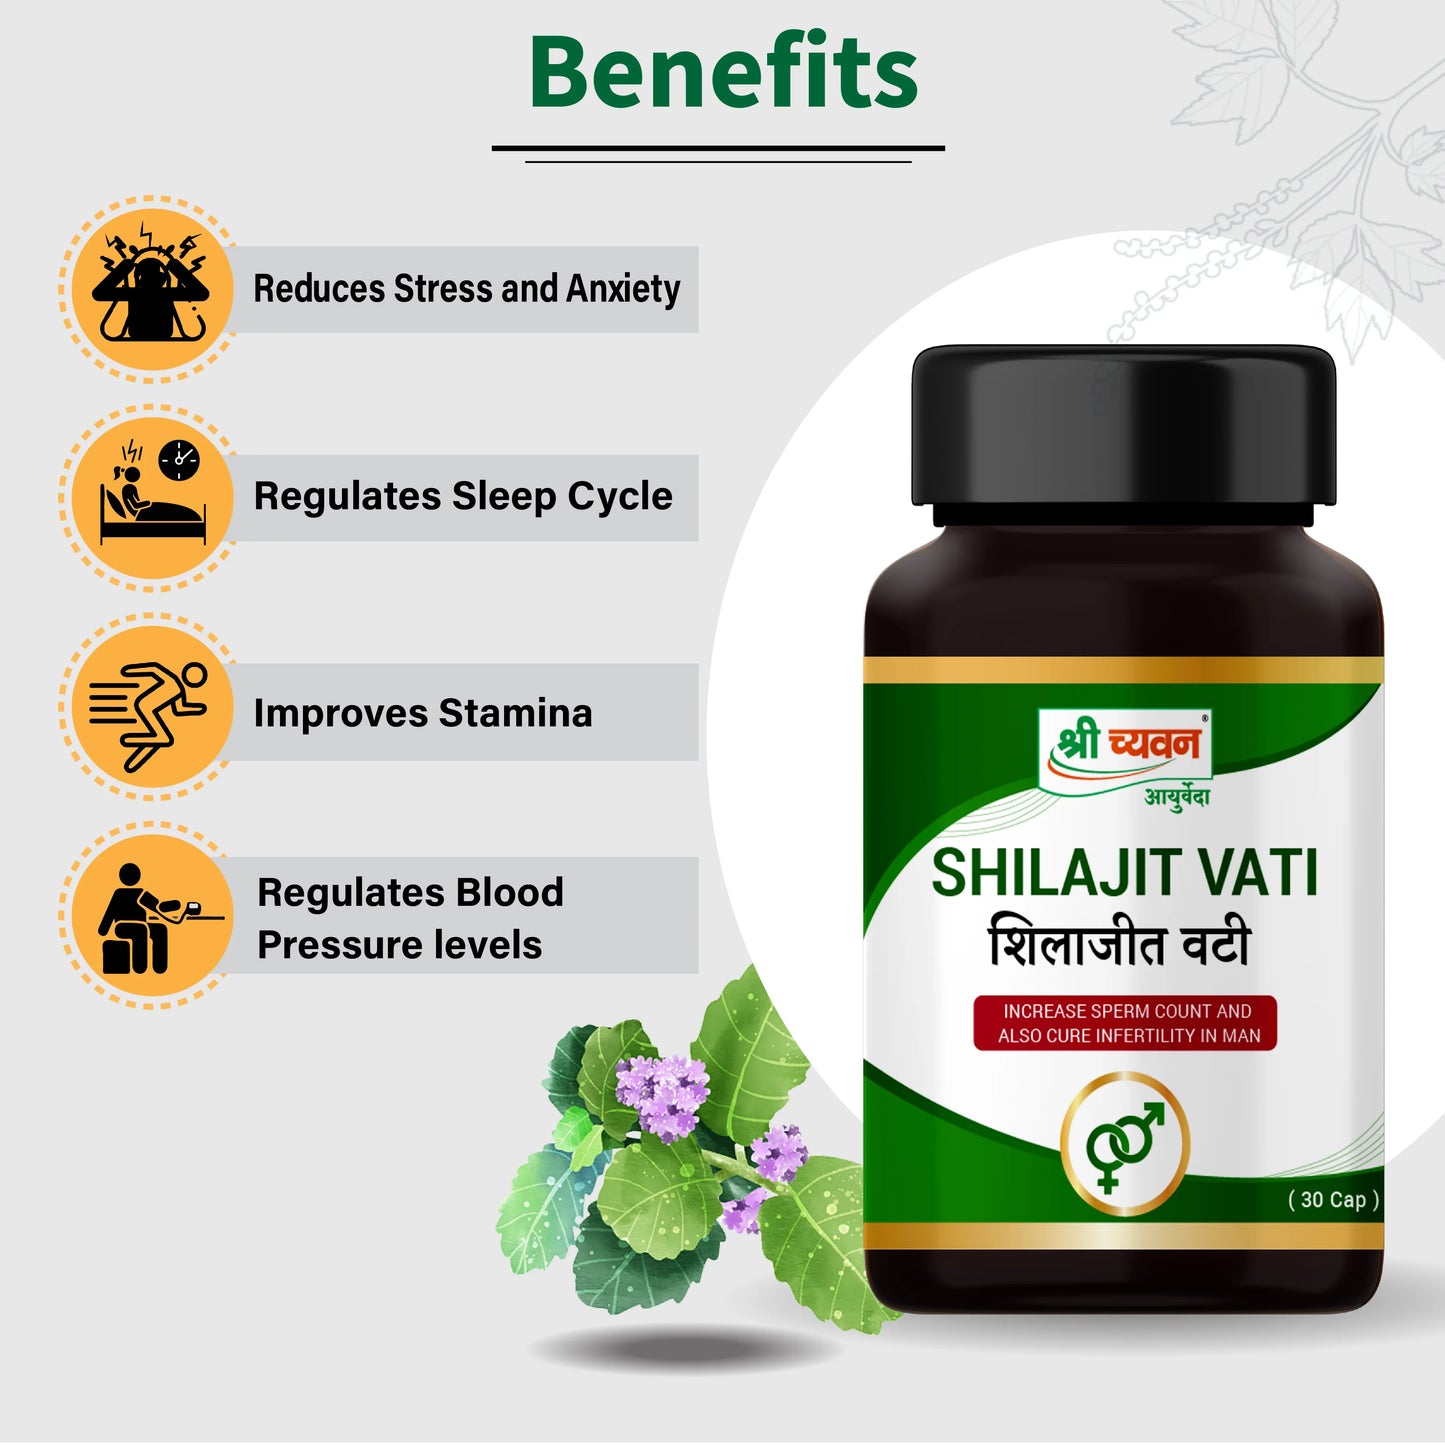 Shilajit Vati Benefits